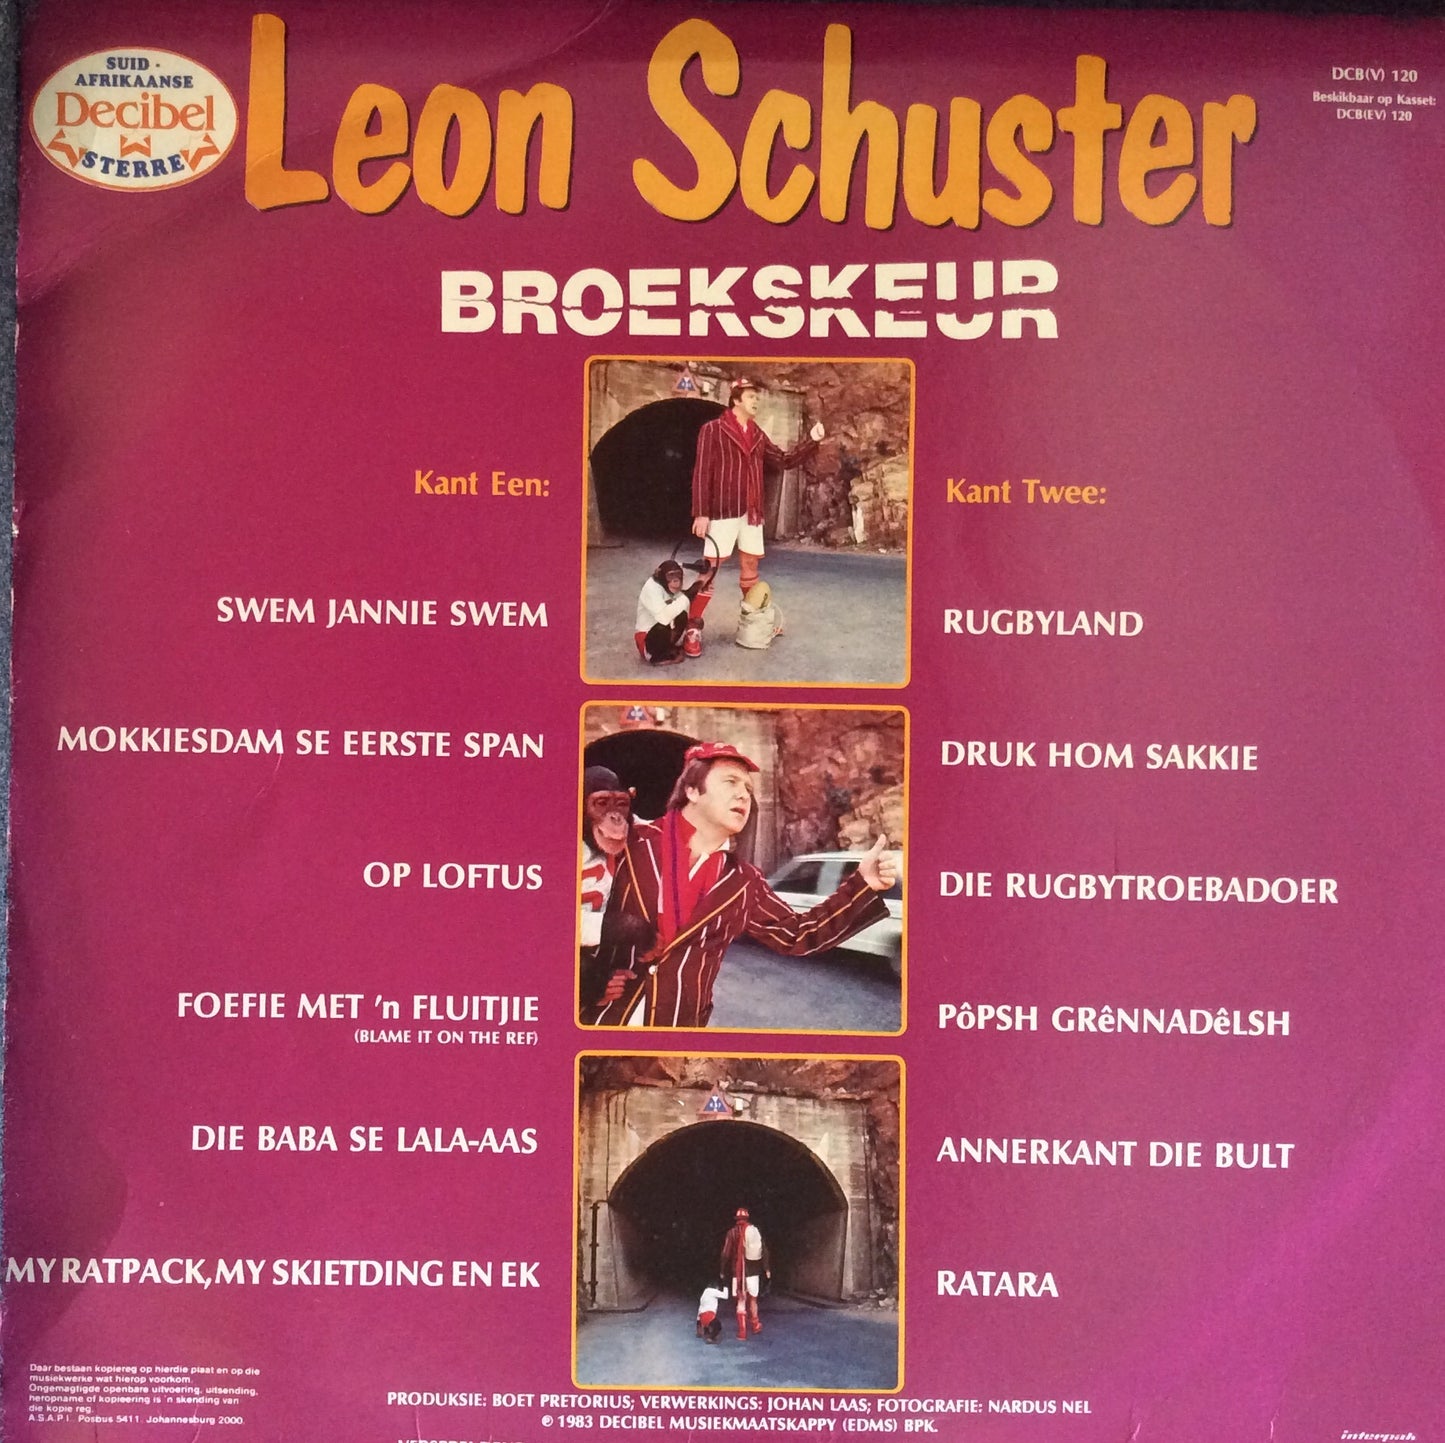 Leon Schuster - Broekskeur